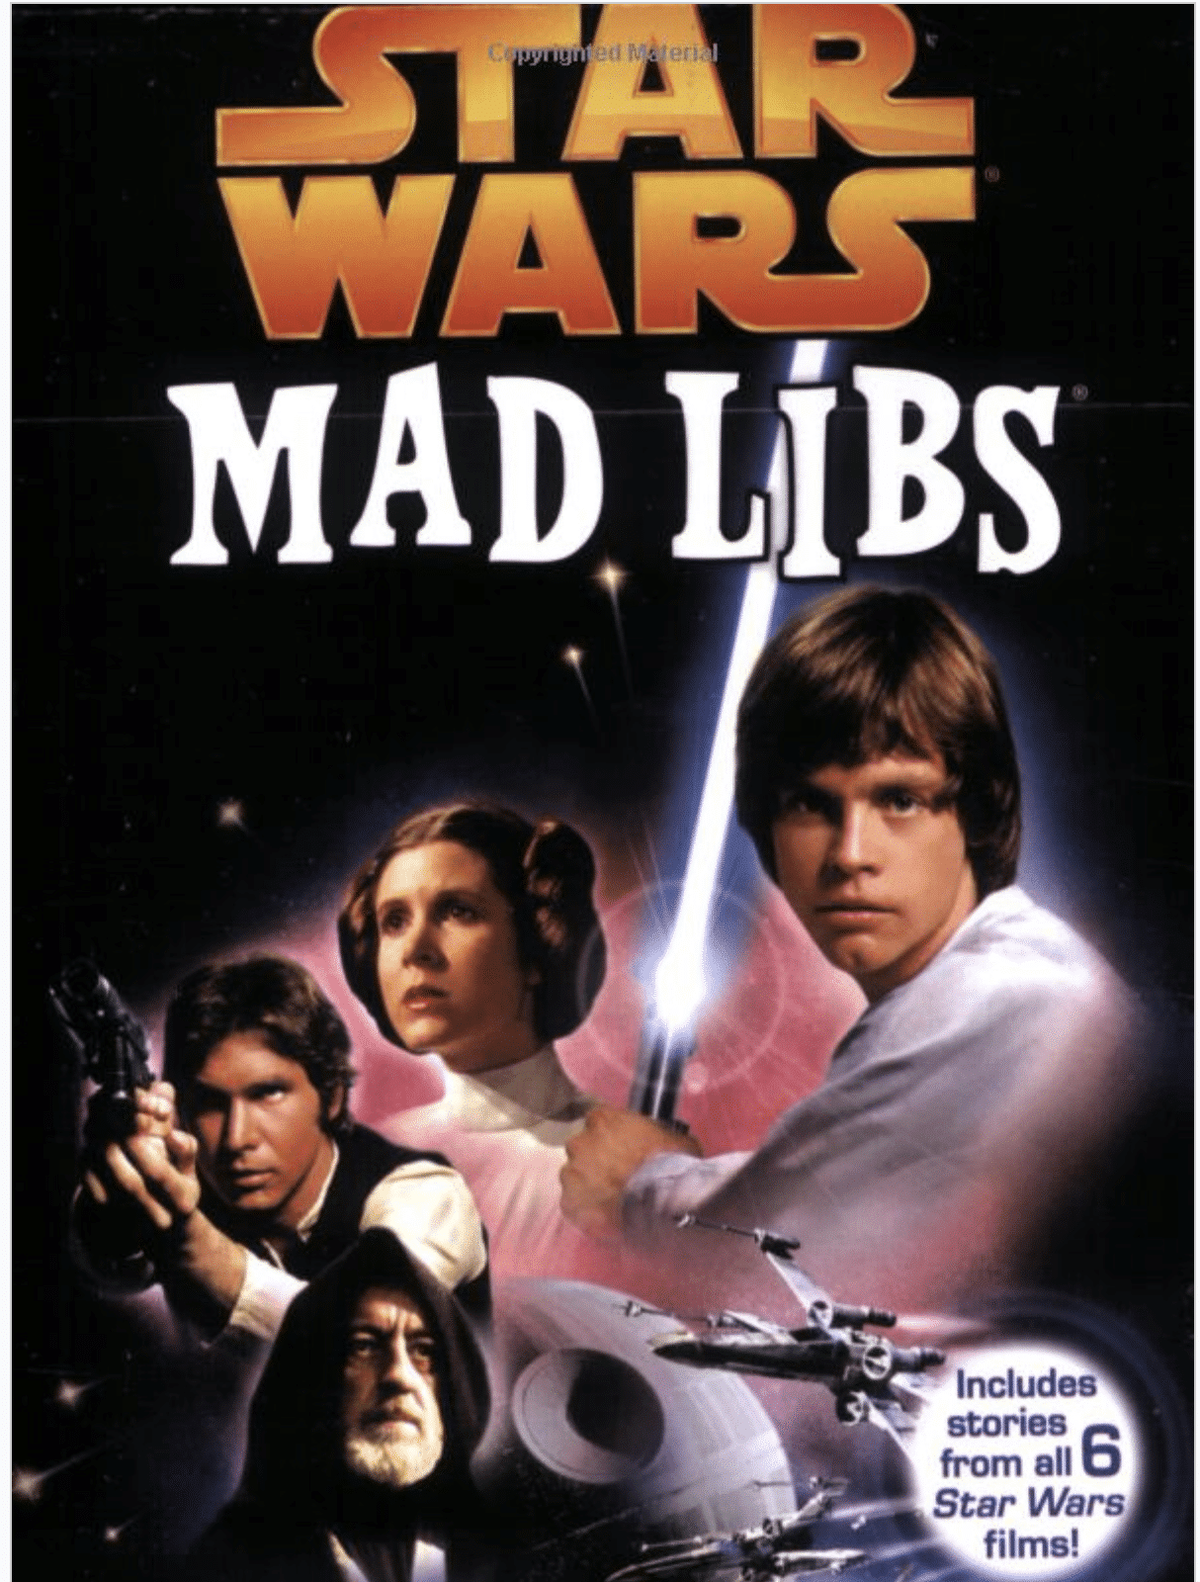 Το Star Wars Mad Libs είναι διασκεδαστικό για παιδιά ή ενήλικες